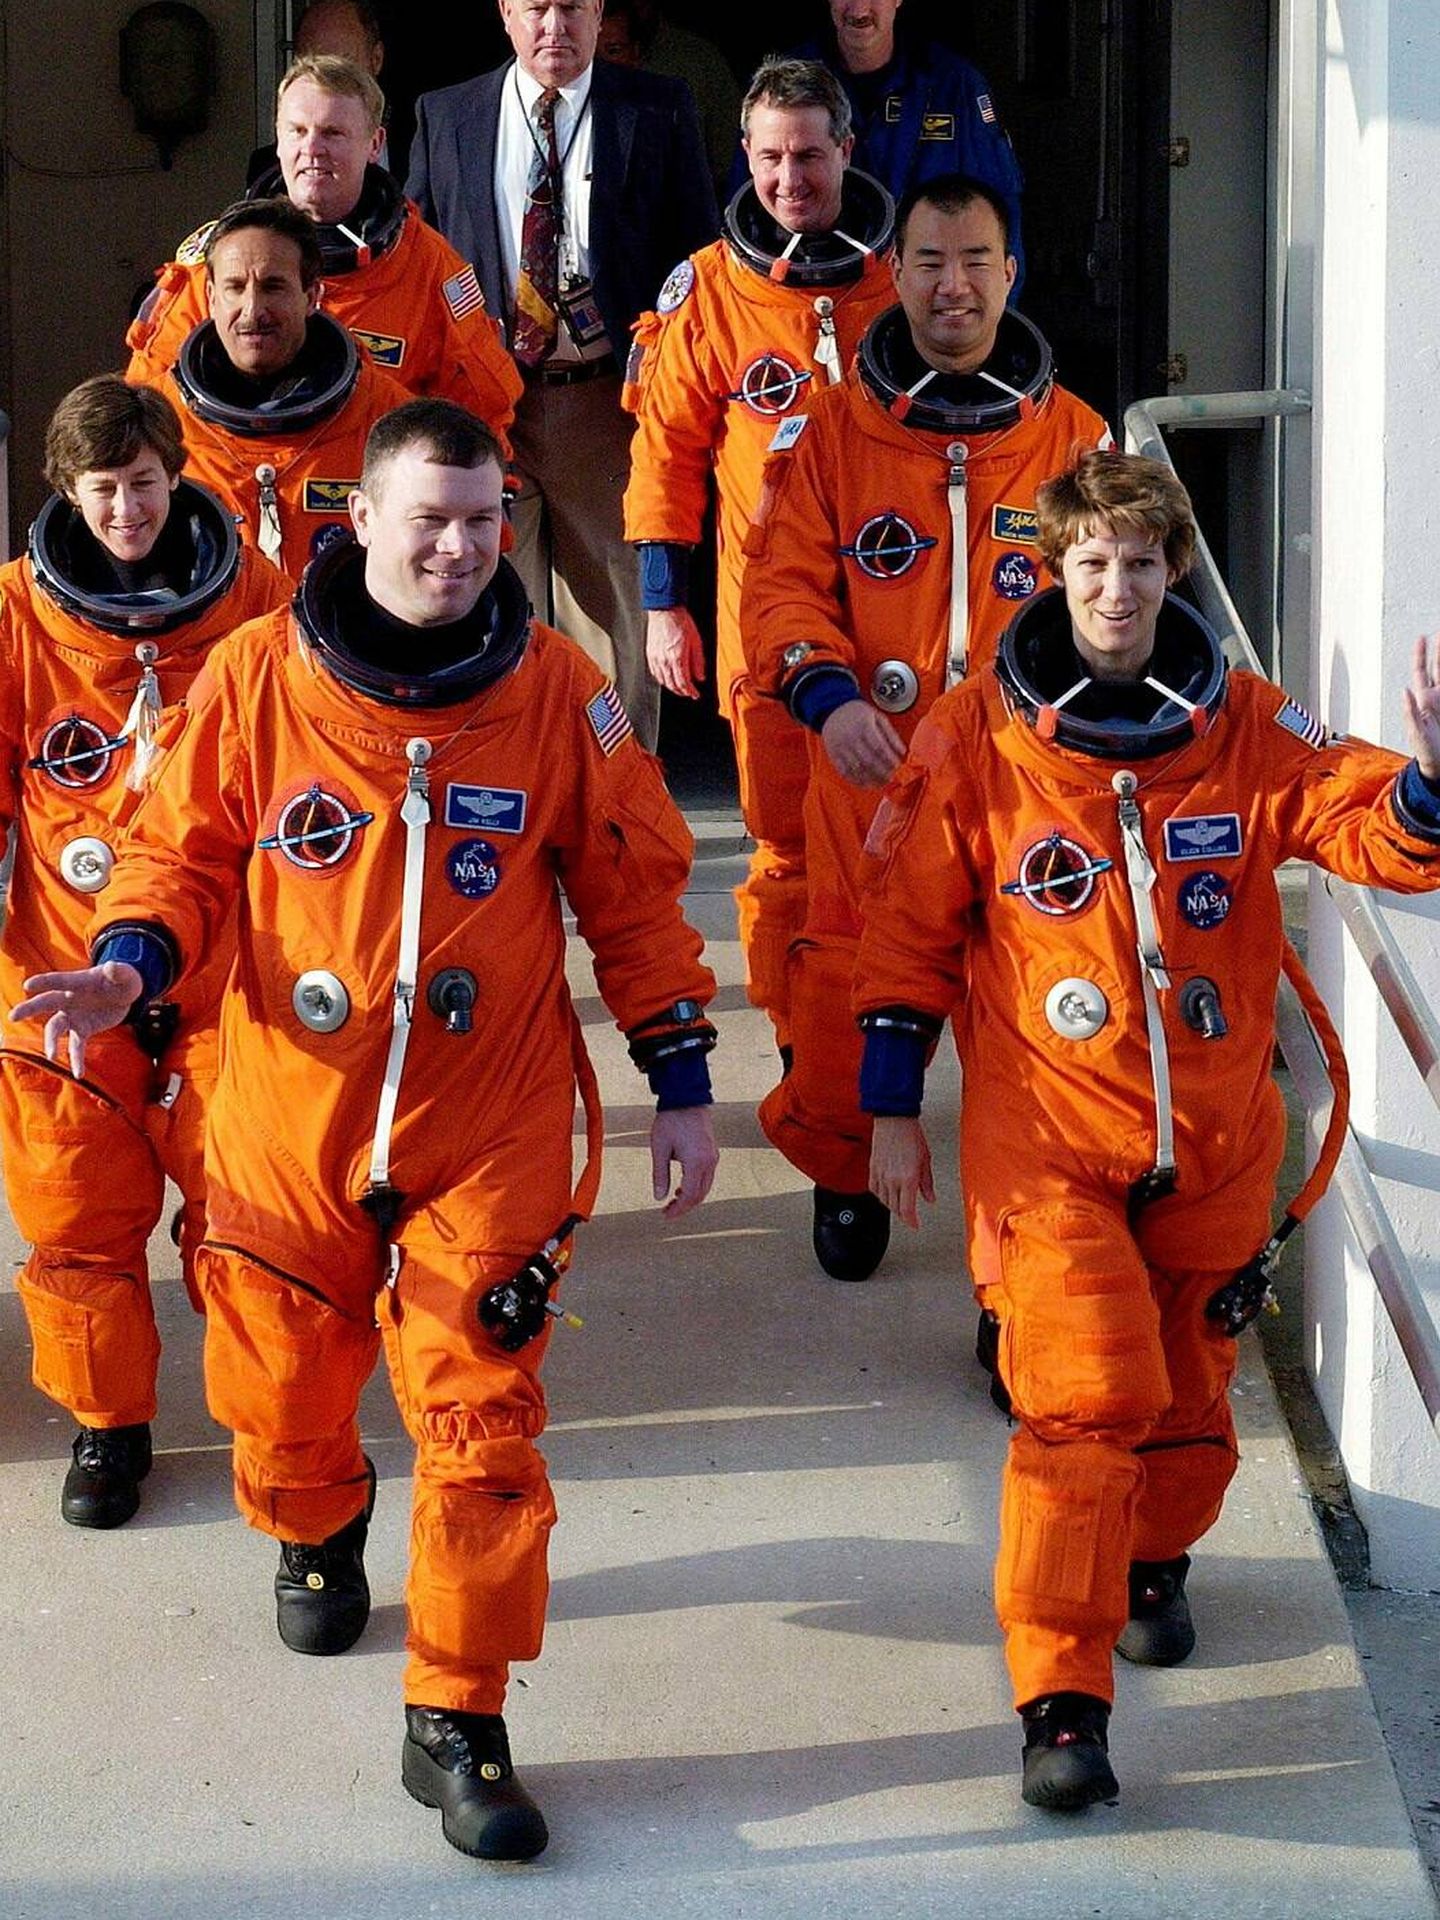 Jim Kelly e Eileen Collins en primer plano dirigiéndose a la misión STS-114. Hubieran estado a cargo de la peligrosa misión de rescate al Columbia. (NASA)